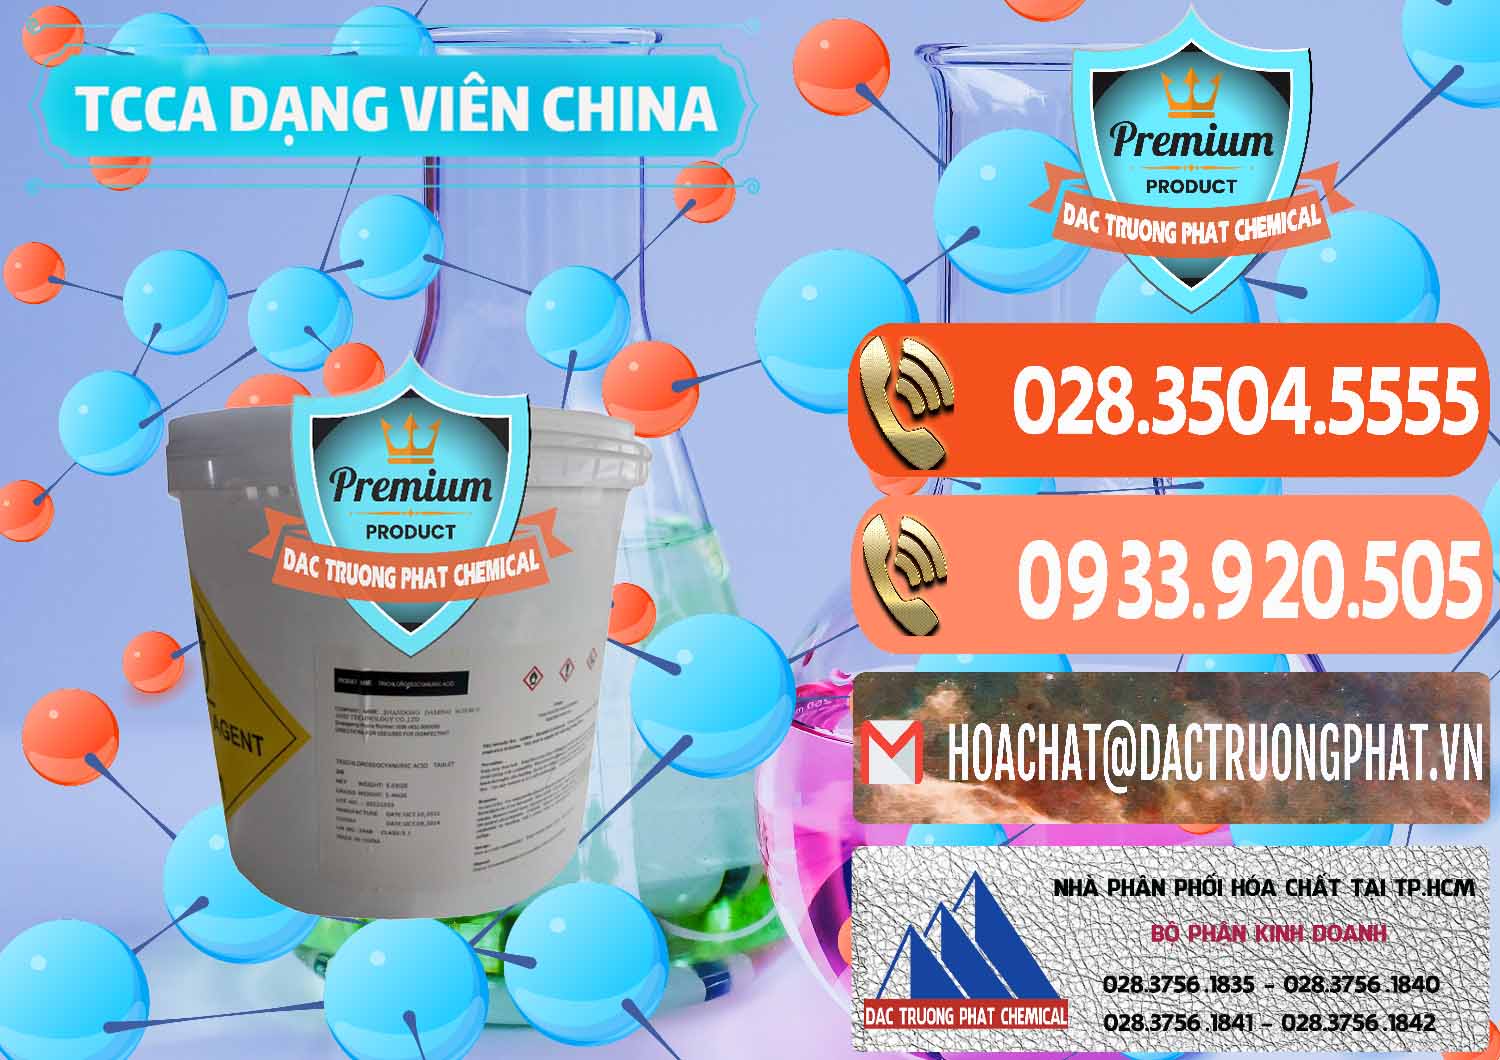 Cty chuyên bán và cung cấp TCCA - Acid Trichloroisocyanuric Dạng Viên Thùng 5kg Trung Quốc China - 0379 - Đơn vị chuyên phân phối _ cung ứng hóa chất tại TP.HCM - hoachatmientay.com